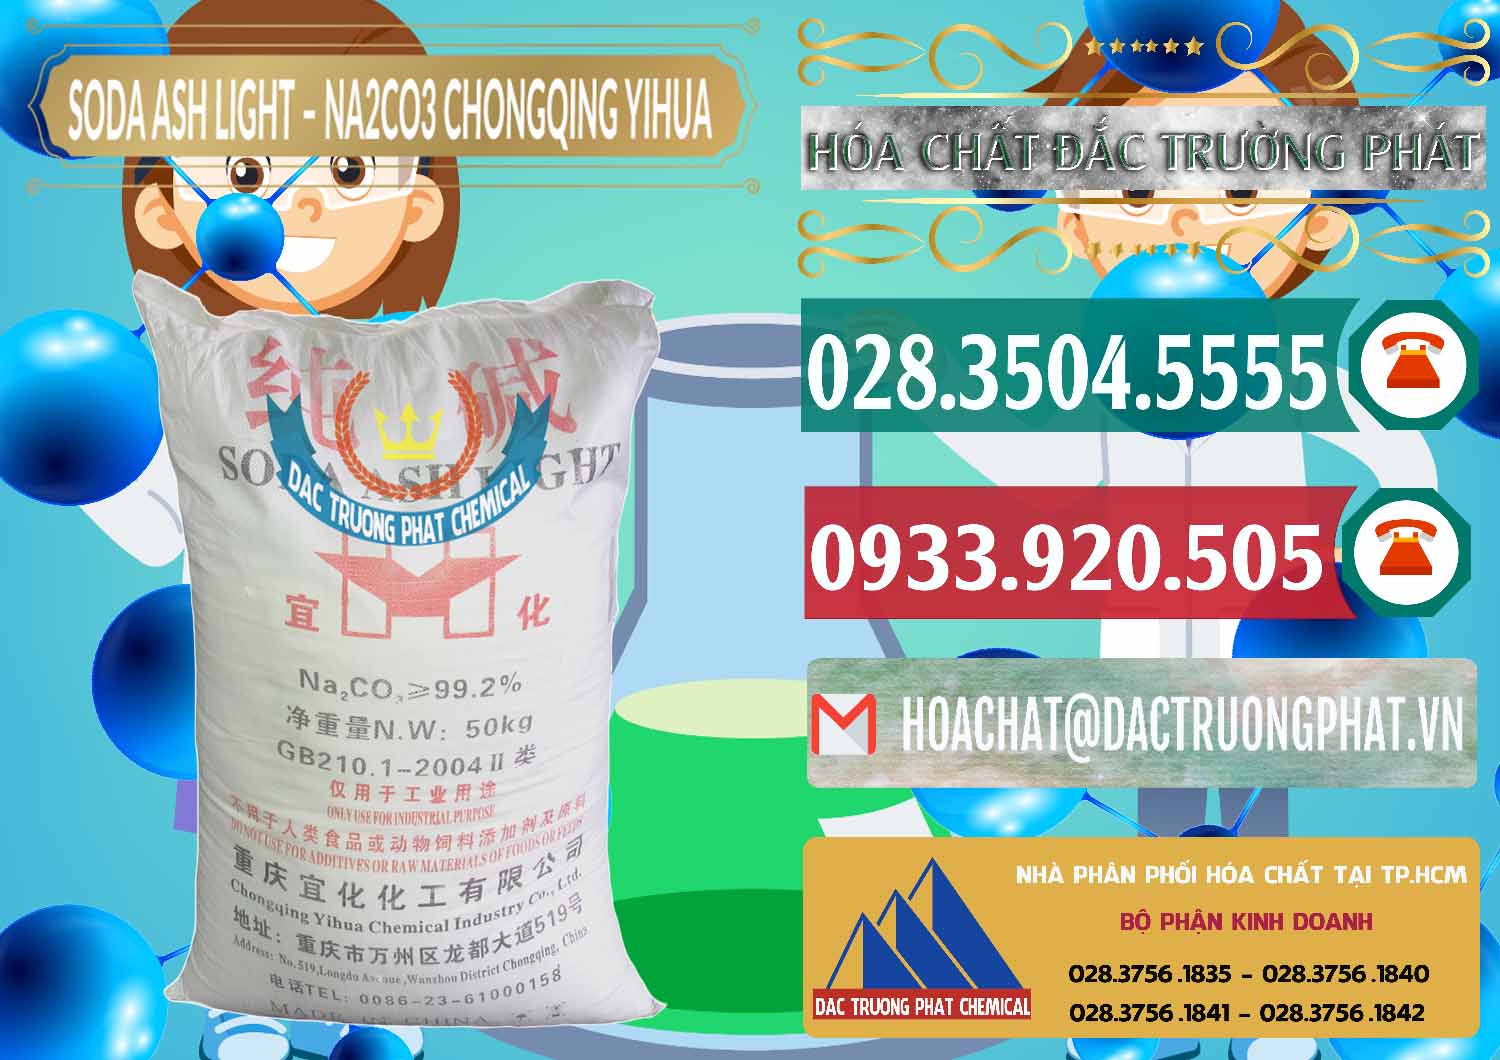 Cty chuyên kinh doanh & bán Soda Ash Light - NA2CO3 Chongqing Yihua Trung Quốc China - 0129 - Chuyên phân phối _ kinh doanh hóa chất tại TP.HCM - muabanhoachat.vn